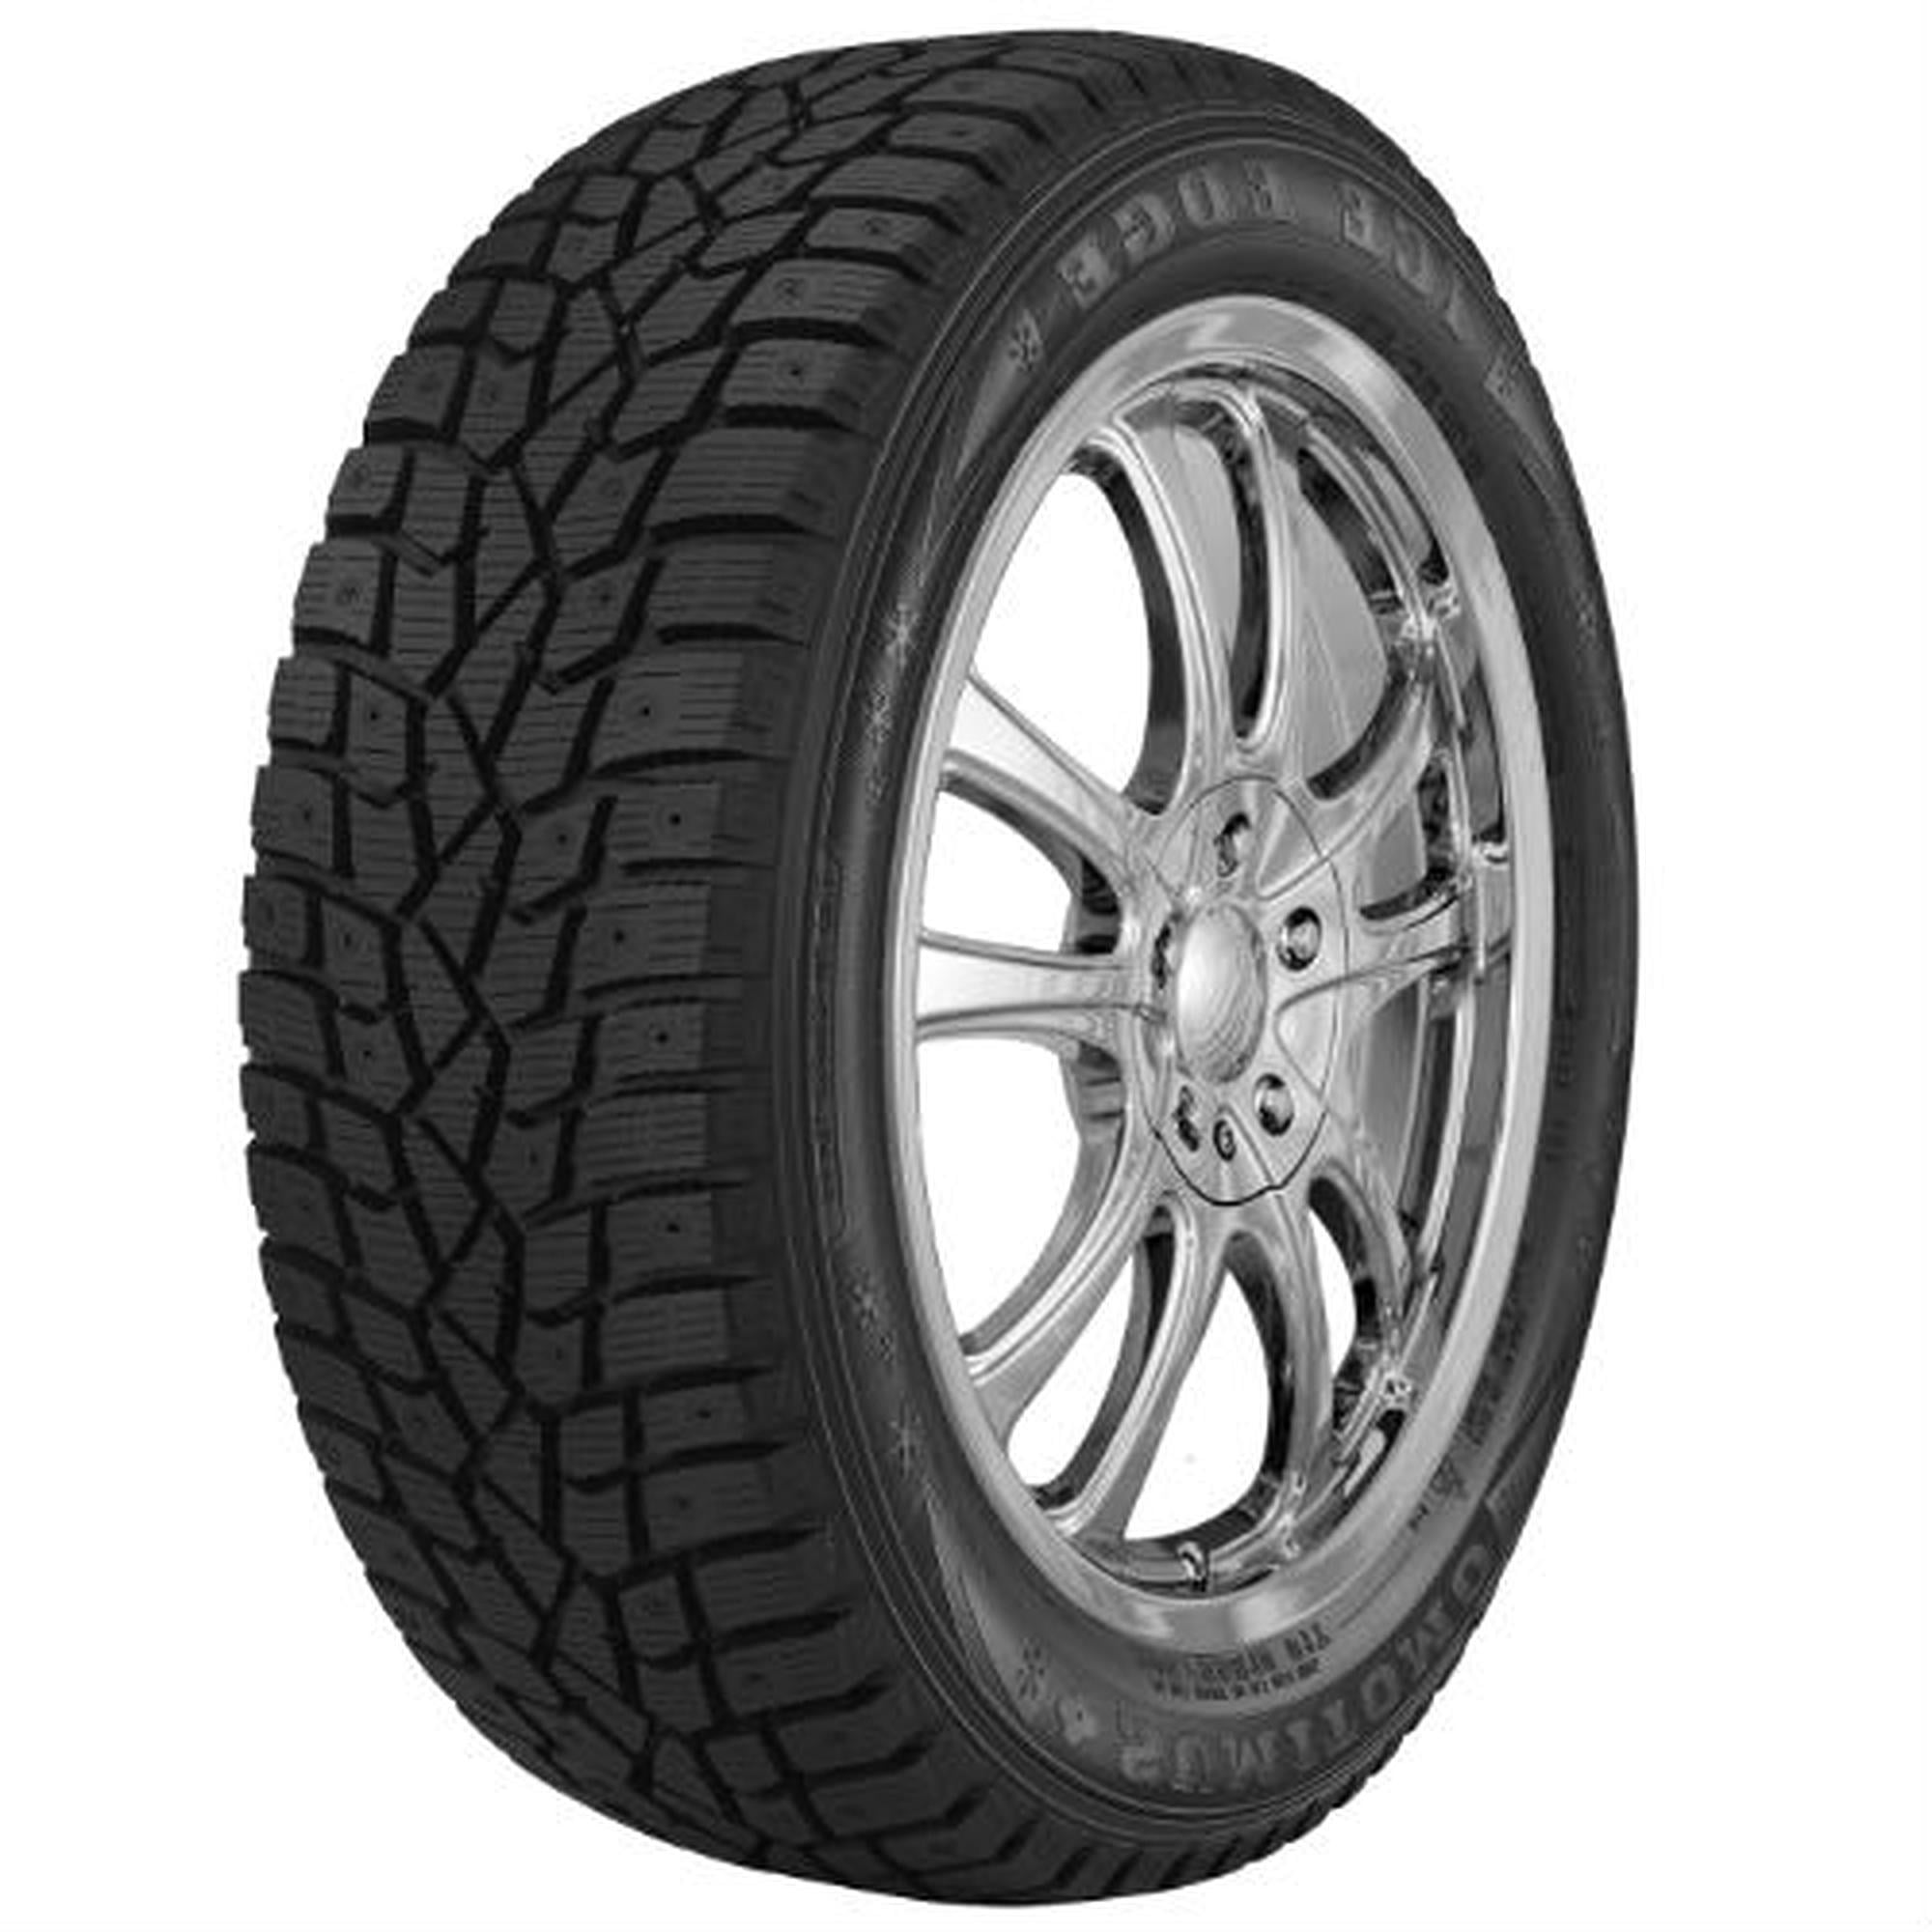 Dunlop Winter Maxx 185/65R15 88T Snow Tire (Studless)